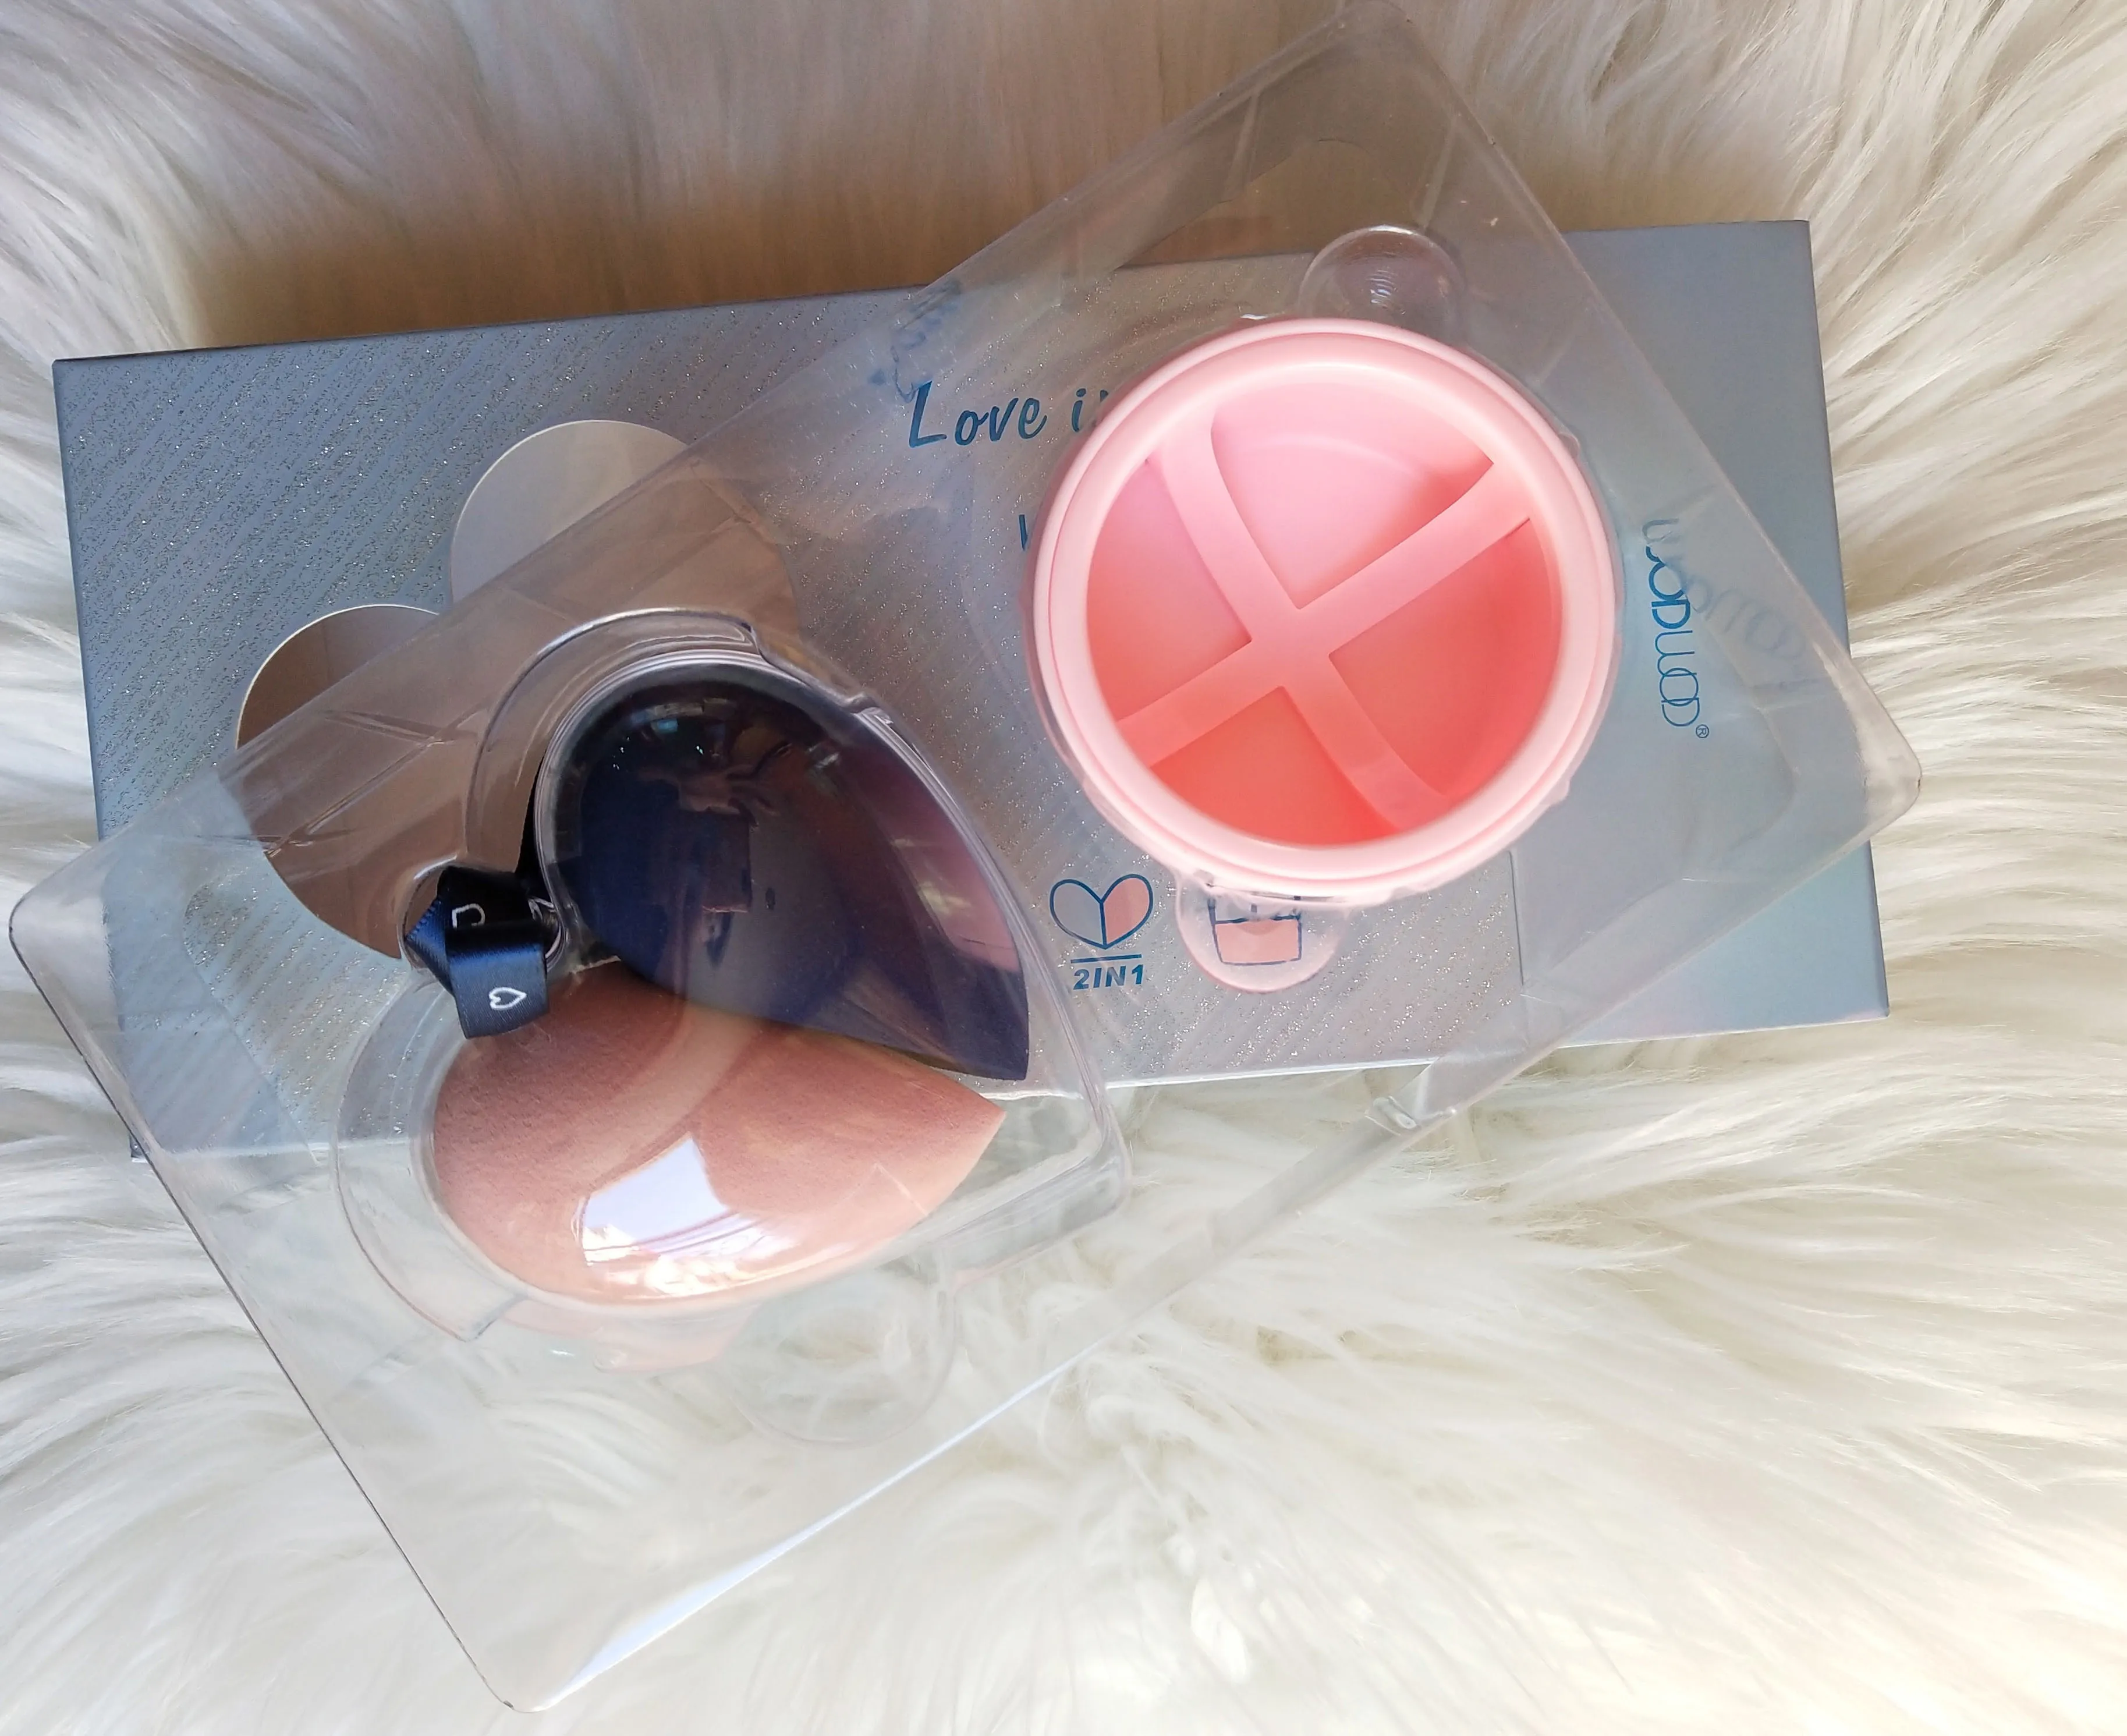 Сухое и влажное двойное использование спонж для макияжа Мини-спонж для смузи с ящиком для хранения косметическое яйцо становится больше с водой